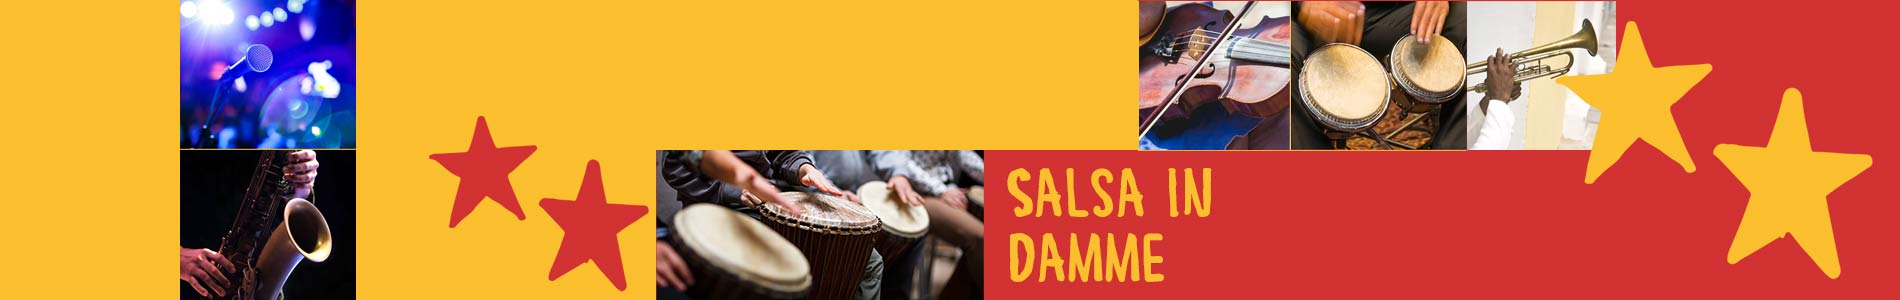 Salsa in Damme – Salsa lernen und tanzen, Tanzkurse, Partys, Veranstaltungen